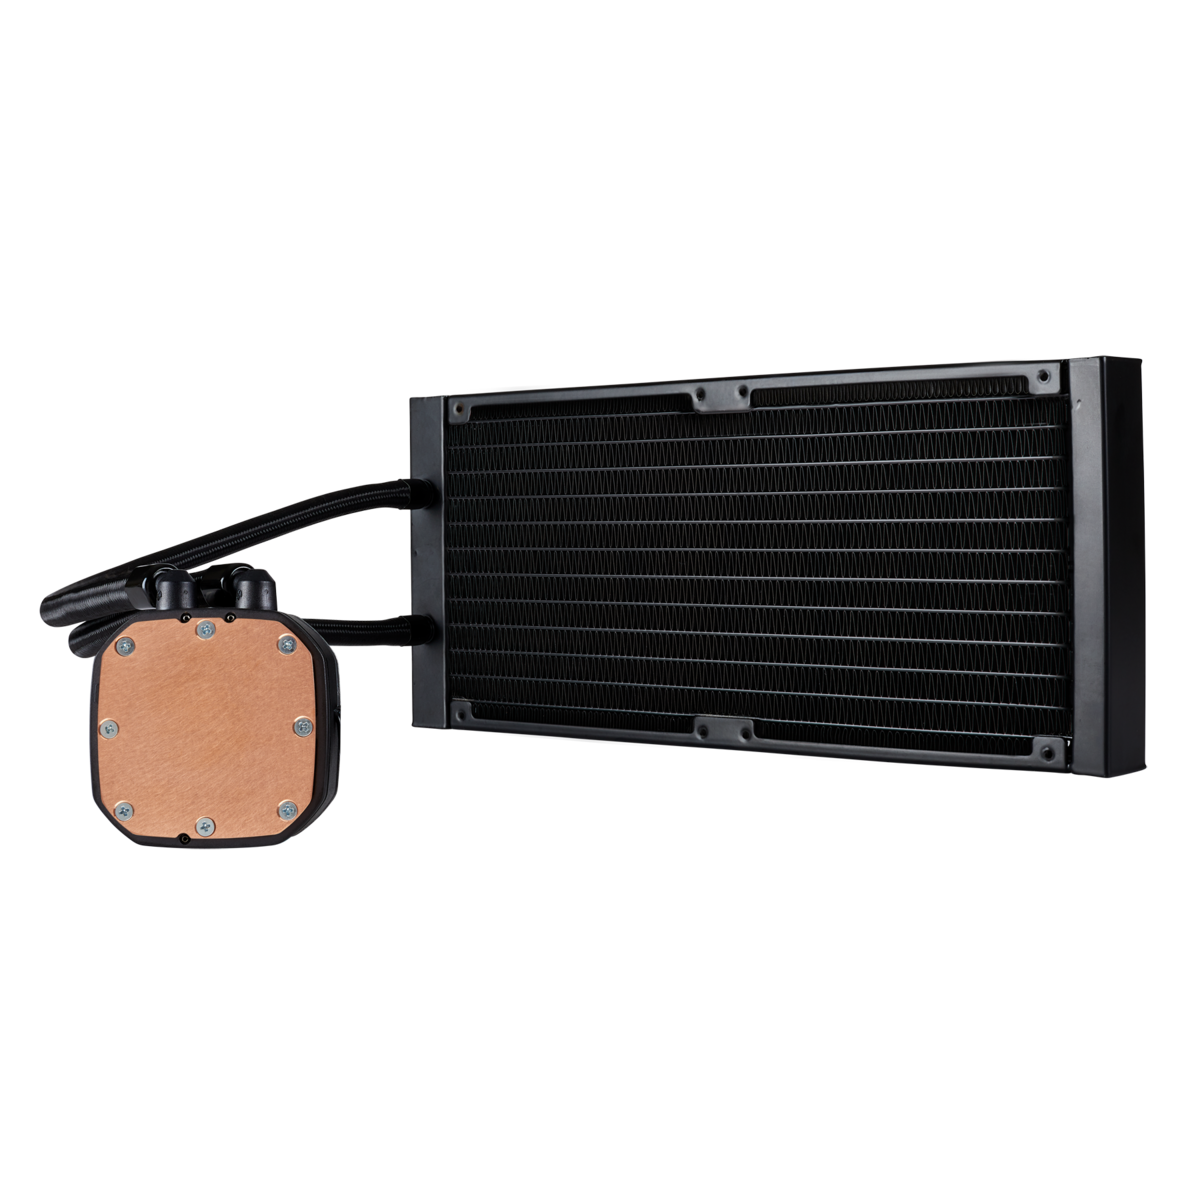 Corsair Hydro Series H115i RGB PLATINUM 280mm Liquid CPU Cooler